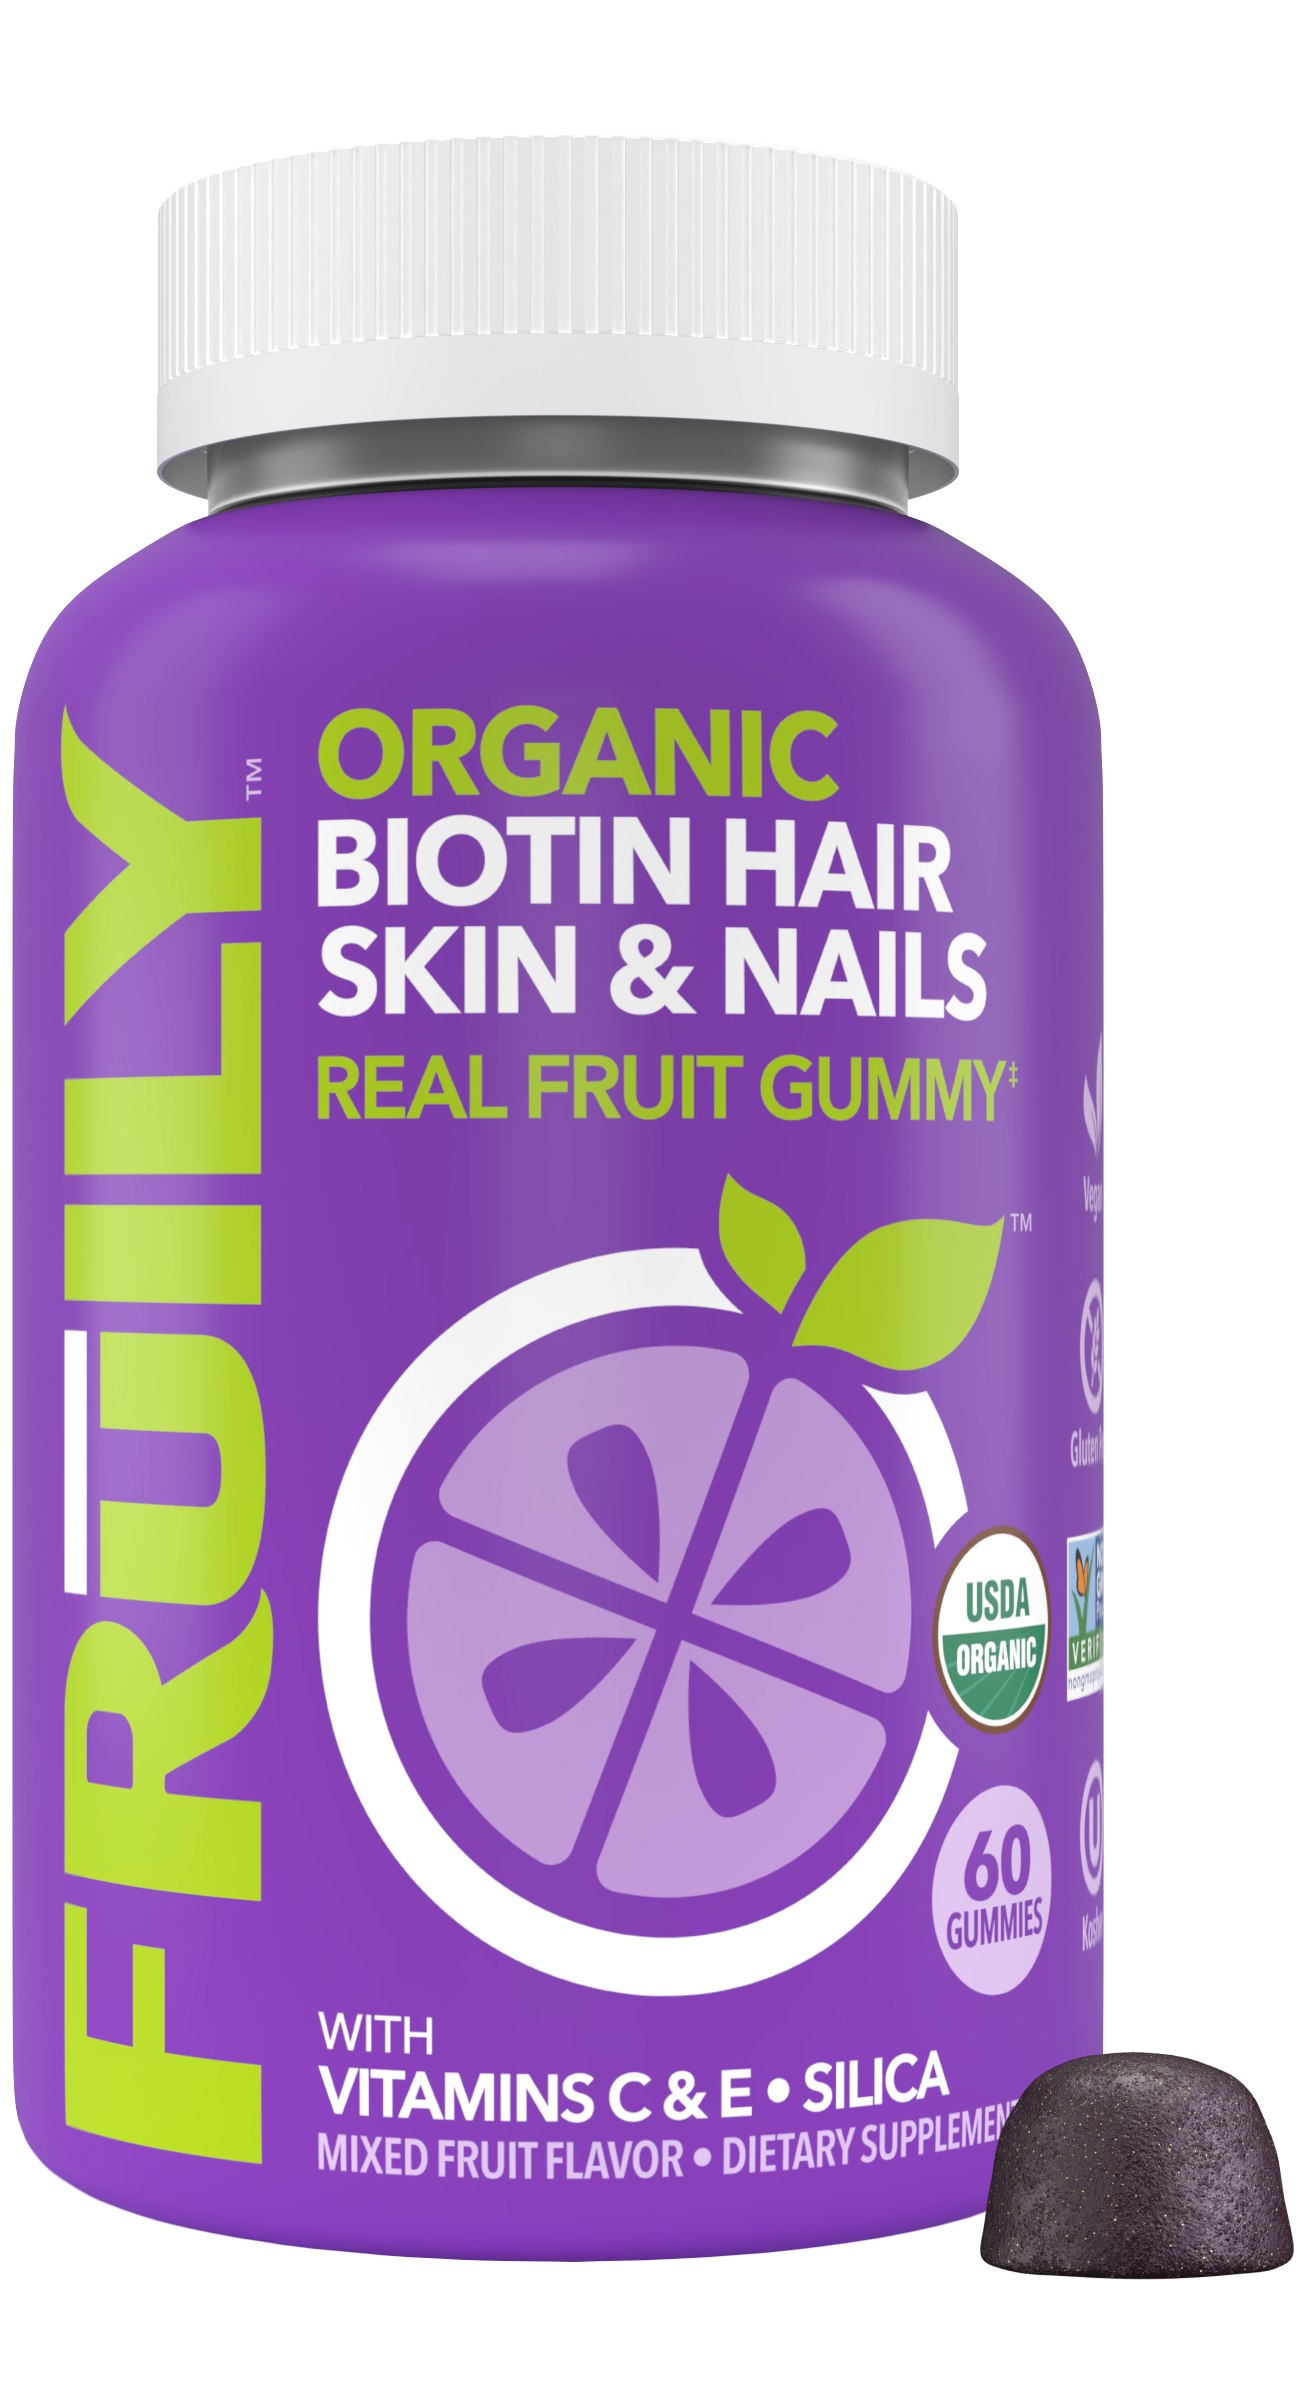 Biotin Hair, Skin, & Nails